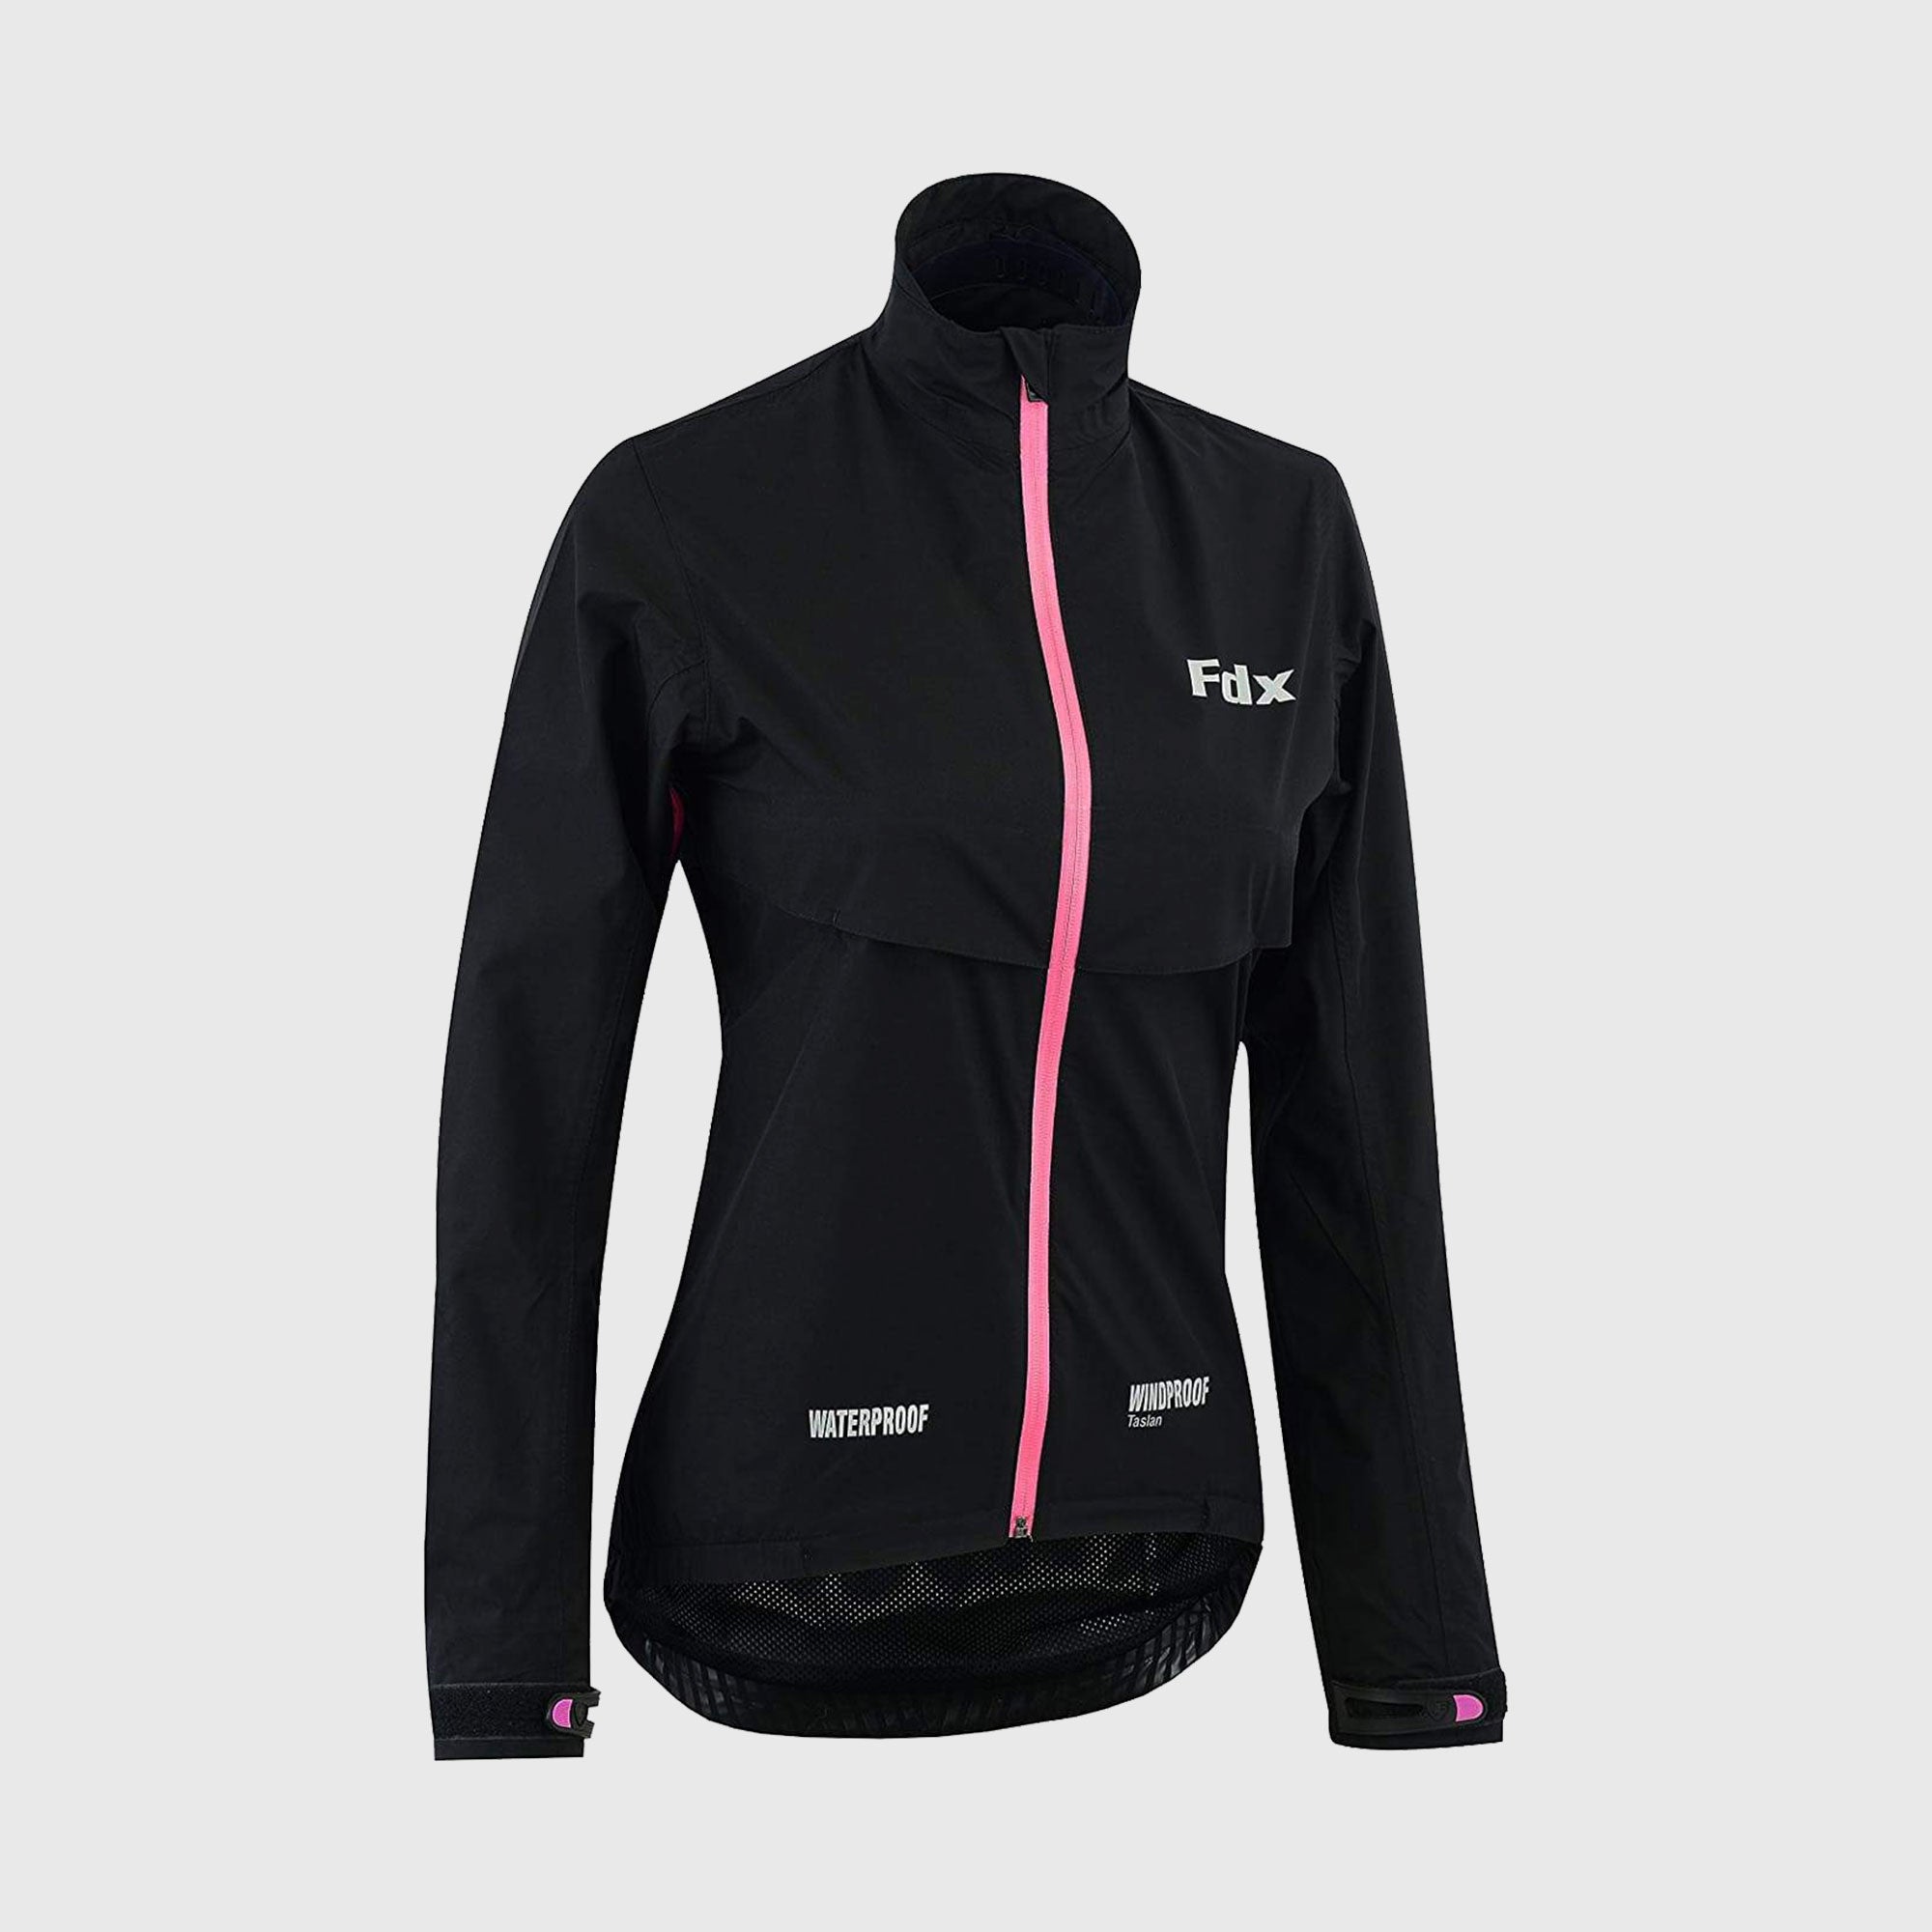 Fdx Evex Women's Pink Waterproof Cycling Jacket